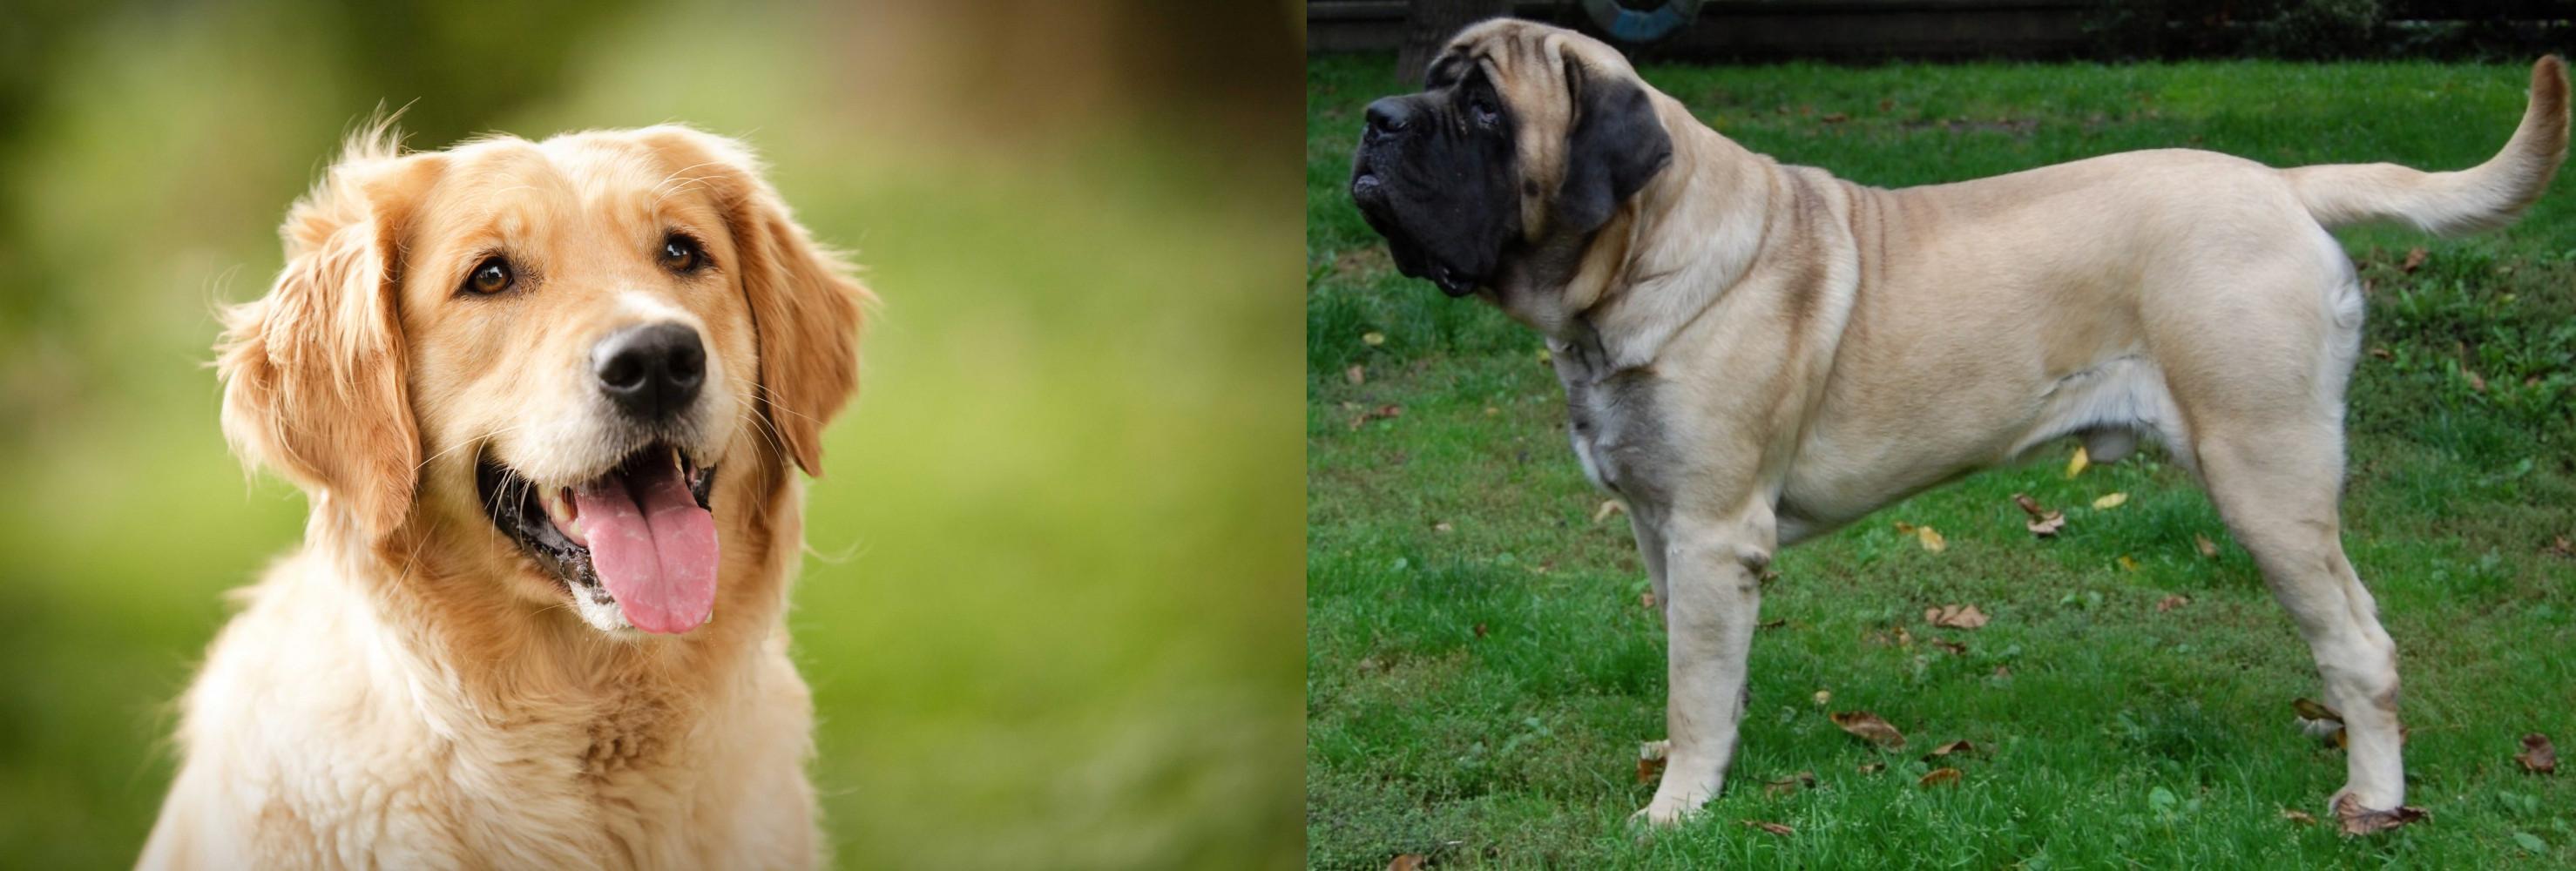 English Mastiff vs Golden Retriever Breed Comparison